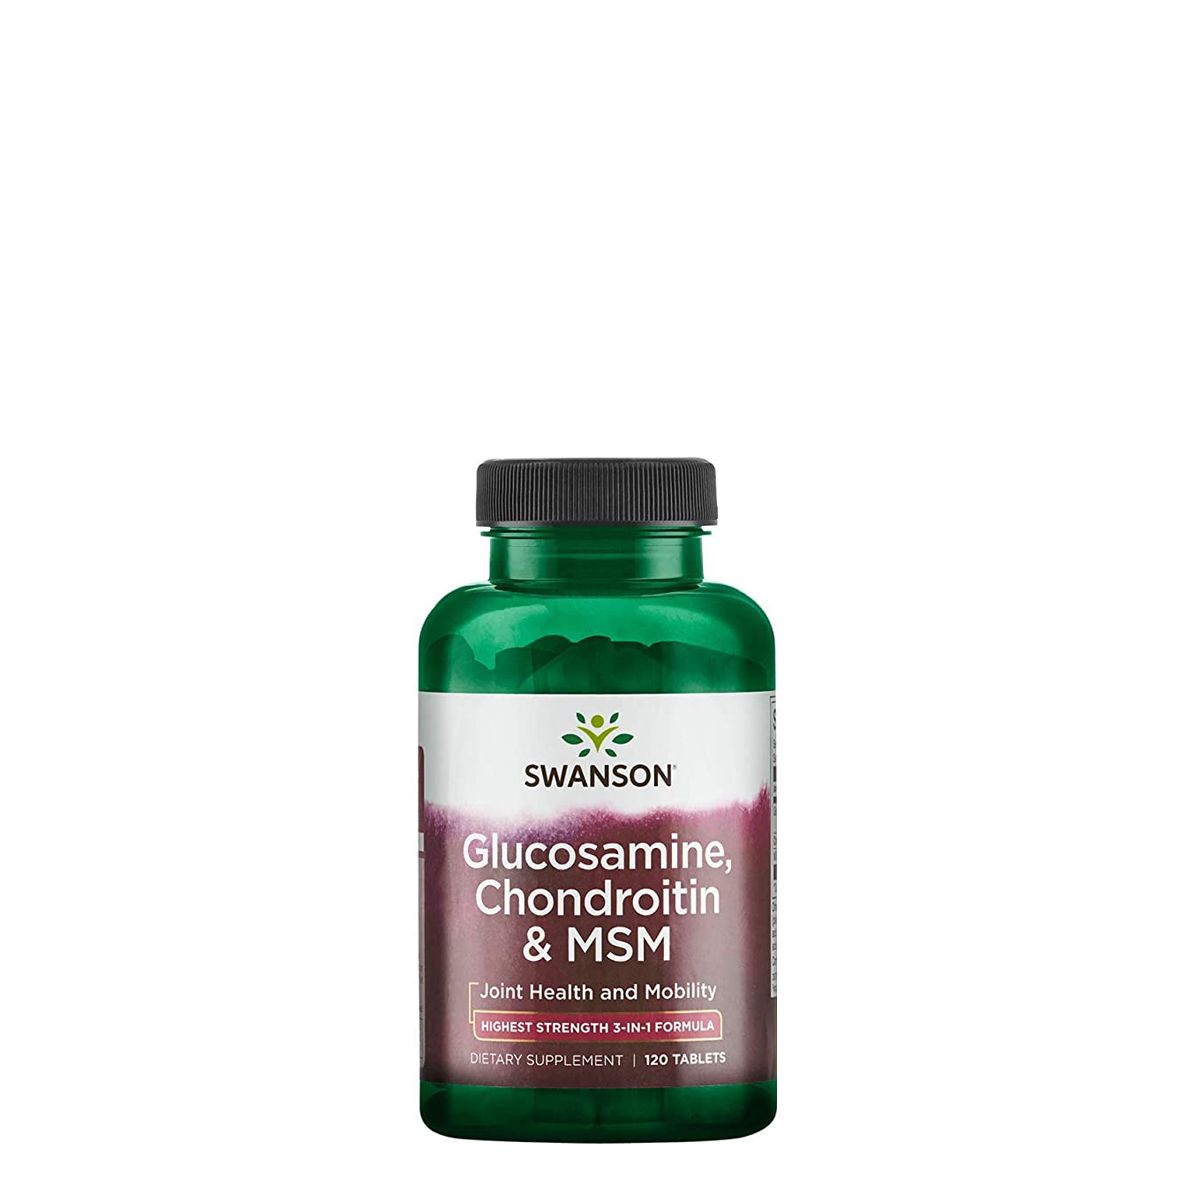 Ízületvédő komplex, Swanson Glucosamine Chondroitin & MSM, 120 tabletta